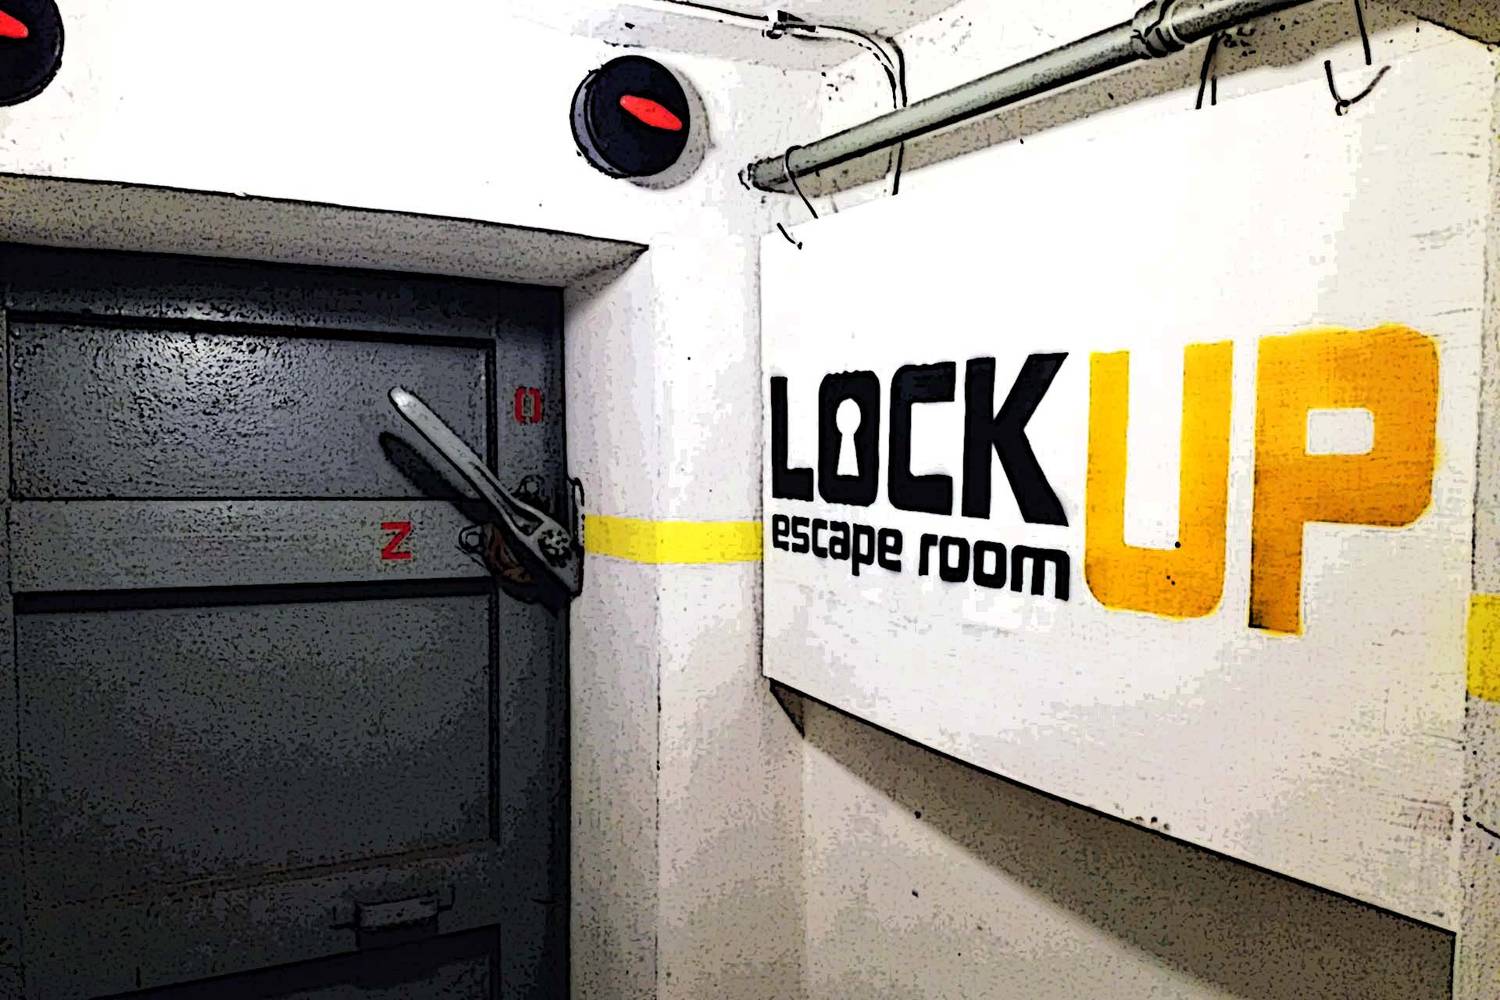 LockUp Escape room